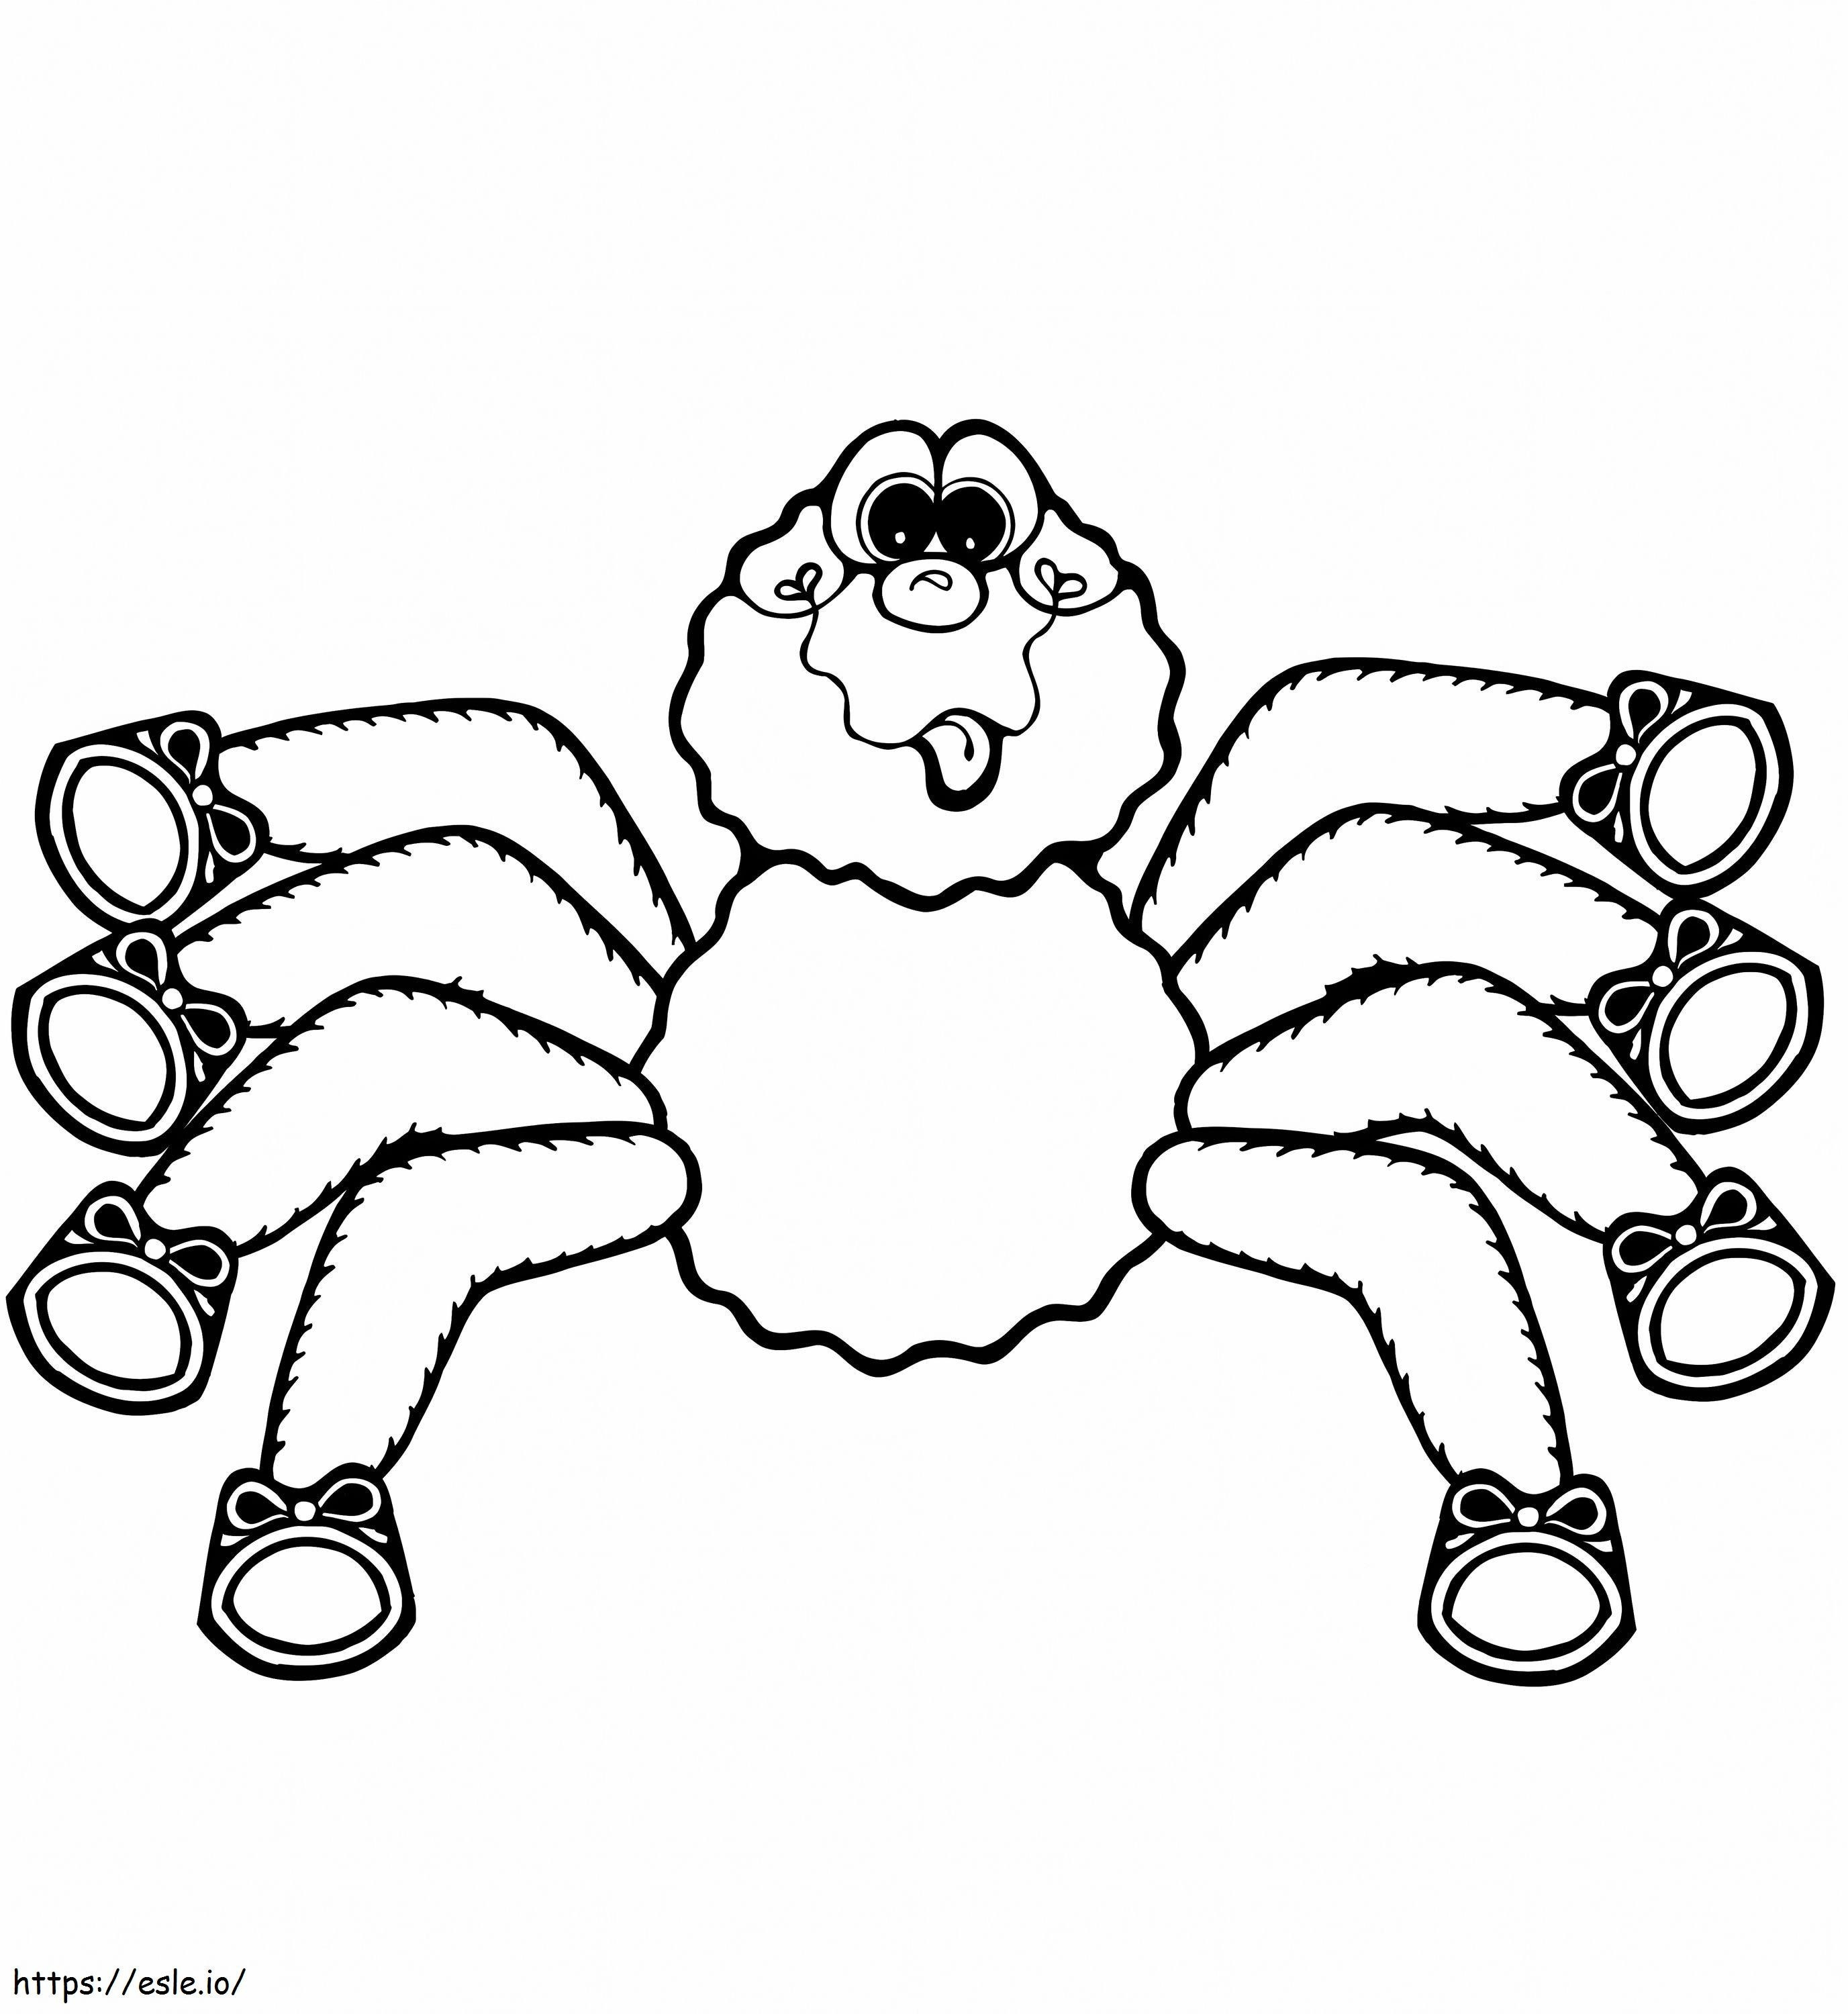 1545184994 Cartoon-Spinne 1 ausmalbilder